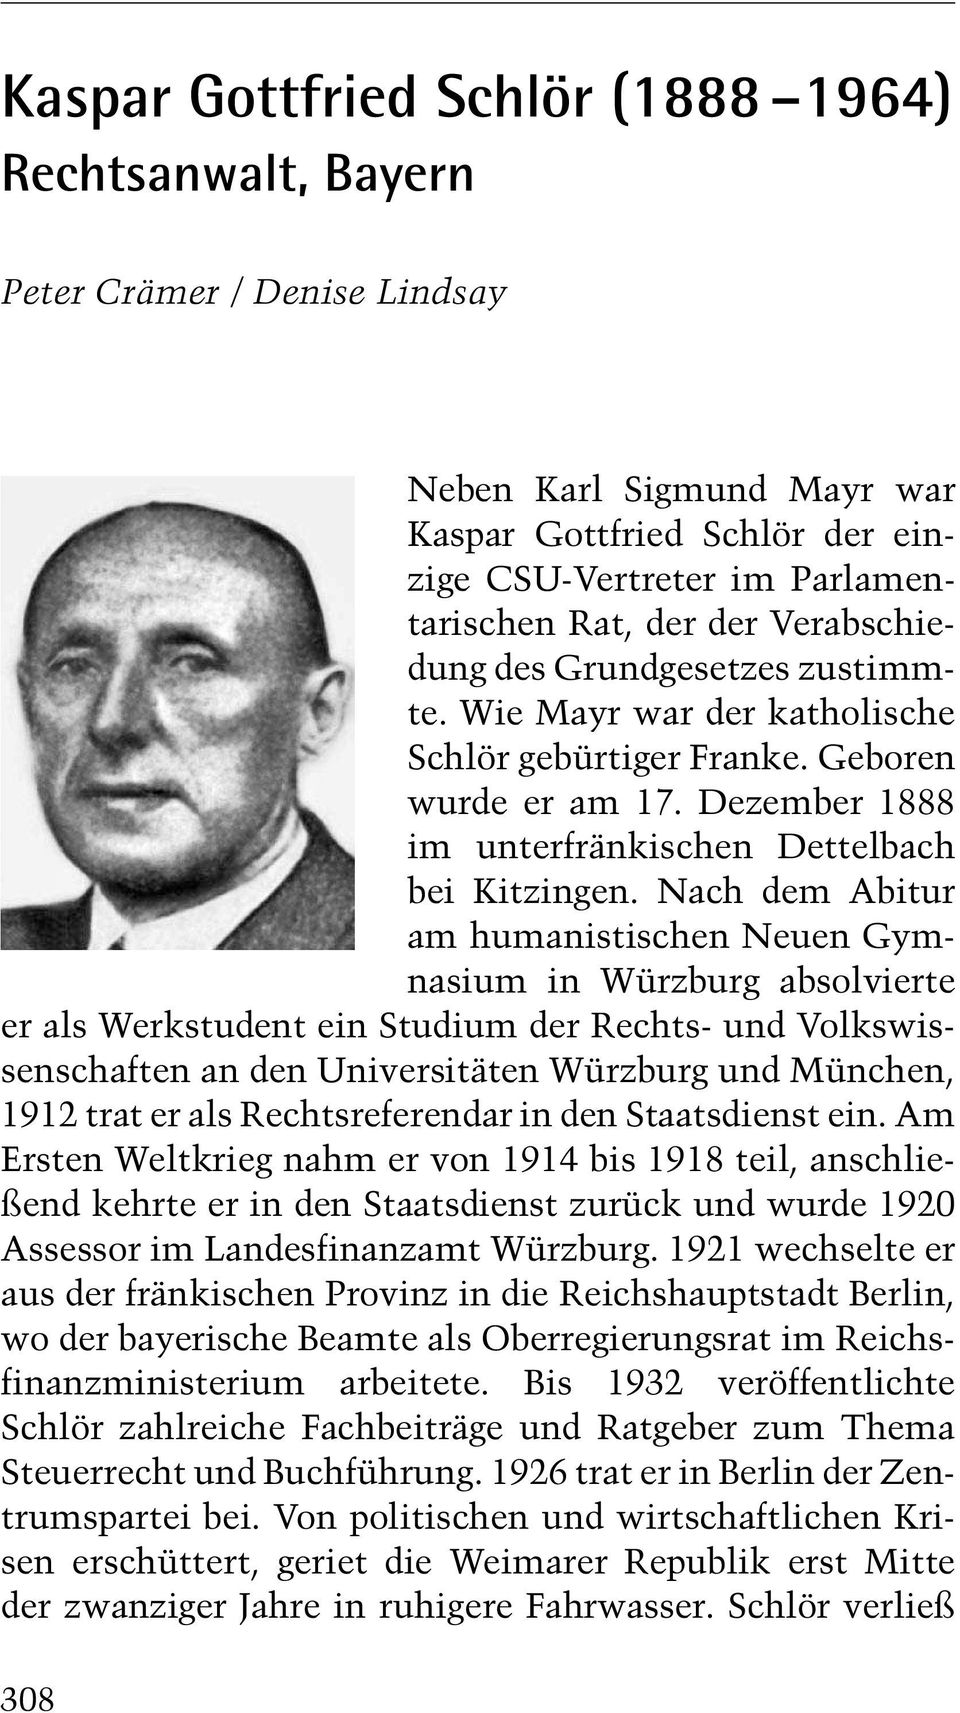 Nach dem Abitur am humanistischen Neuen Gymnasium in Würzburg absolvierte er als Werkstudent ein Studium der Rechts- und Volkswissenschaften an den Universitäten Würzburg und München, 1912 trat er